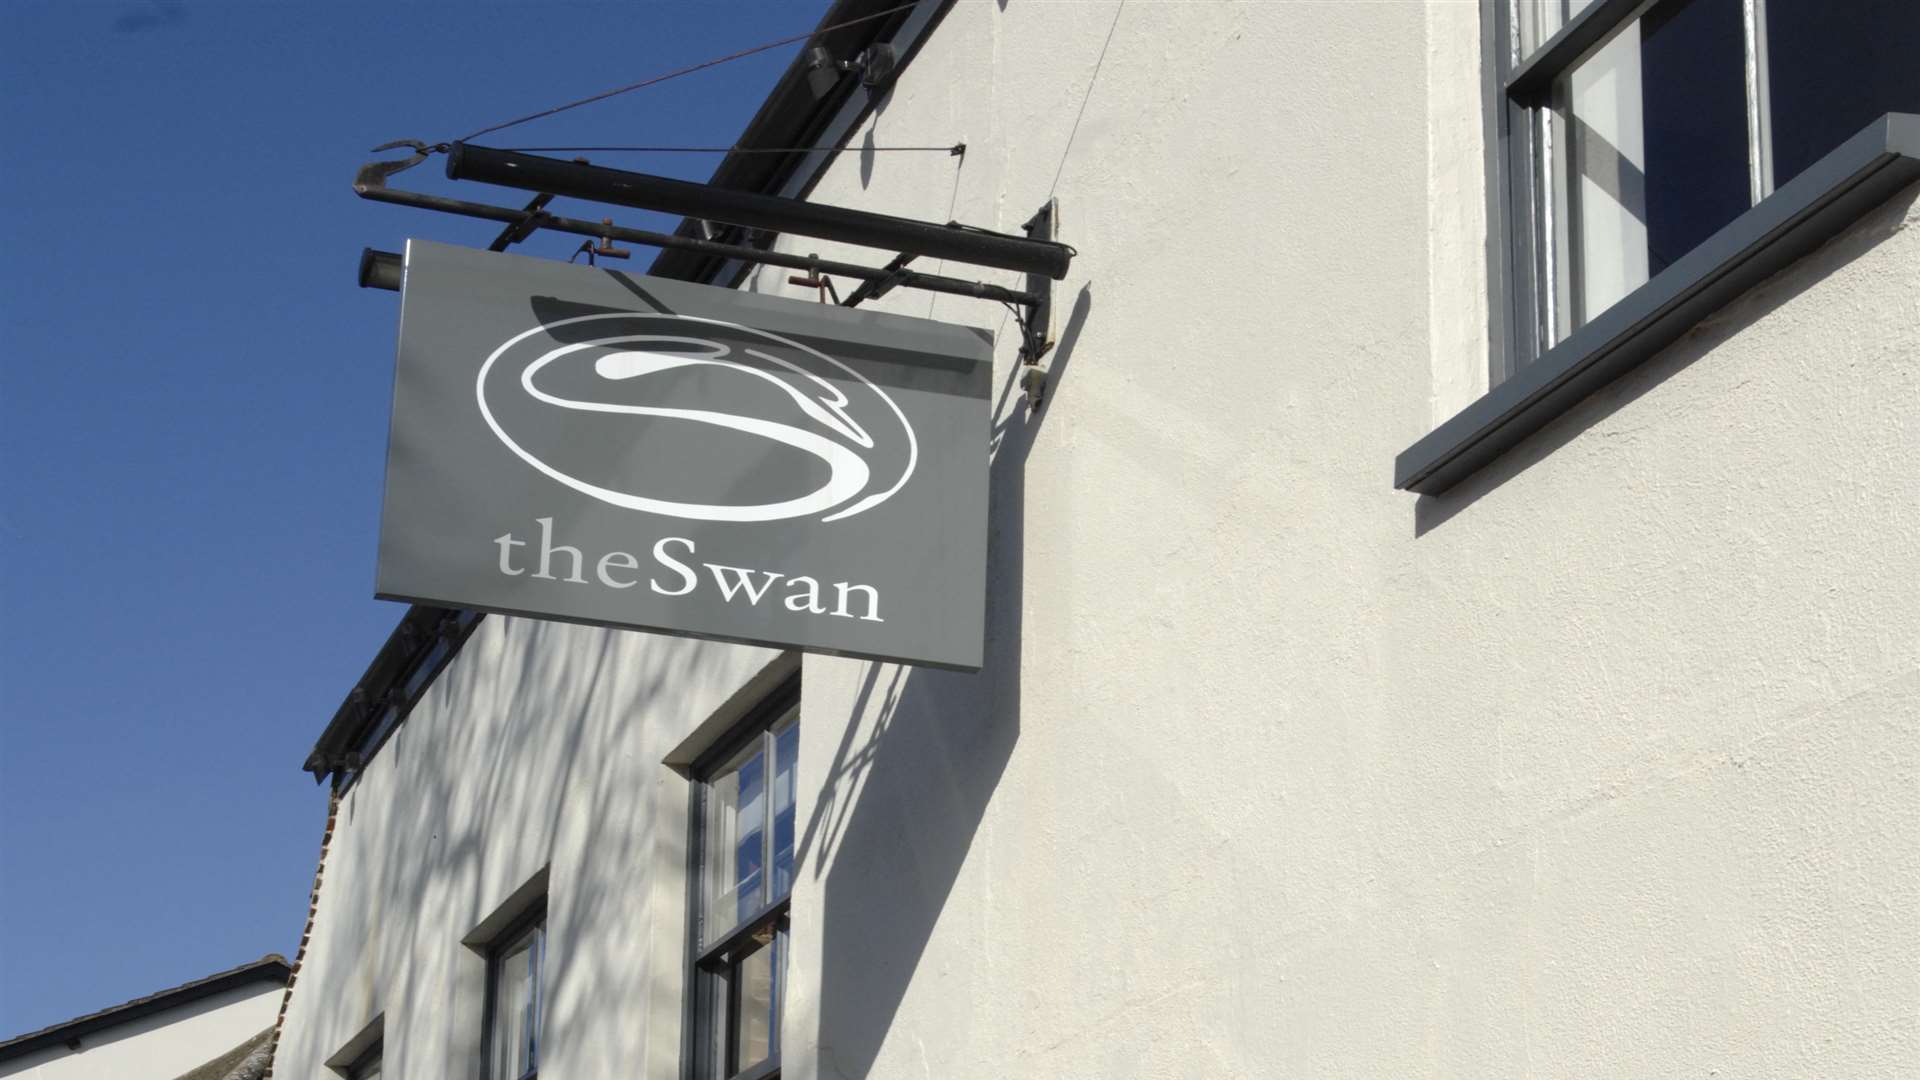 The Swan in Swan Street, West Malling